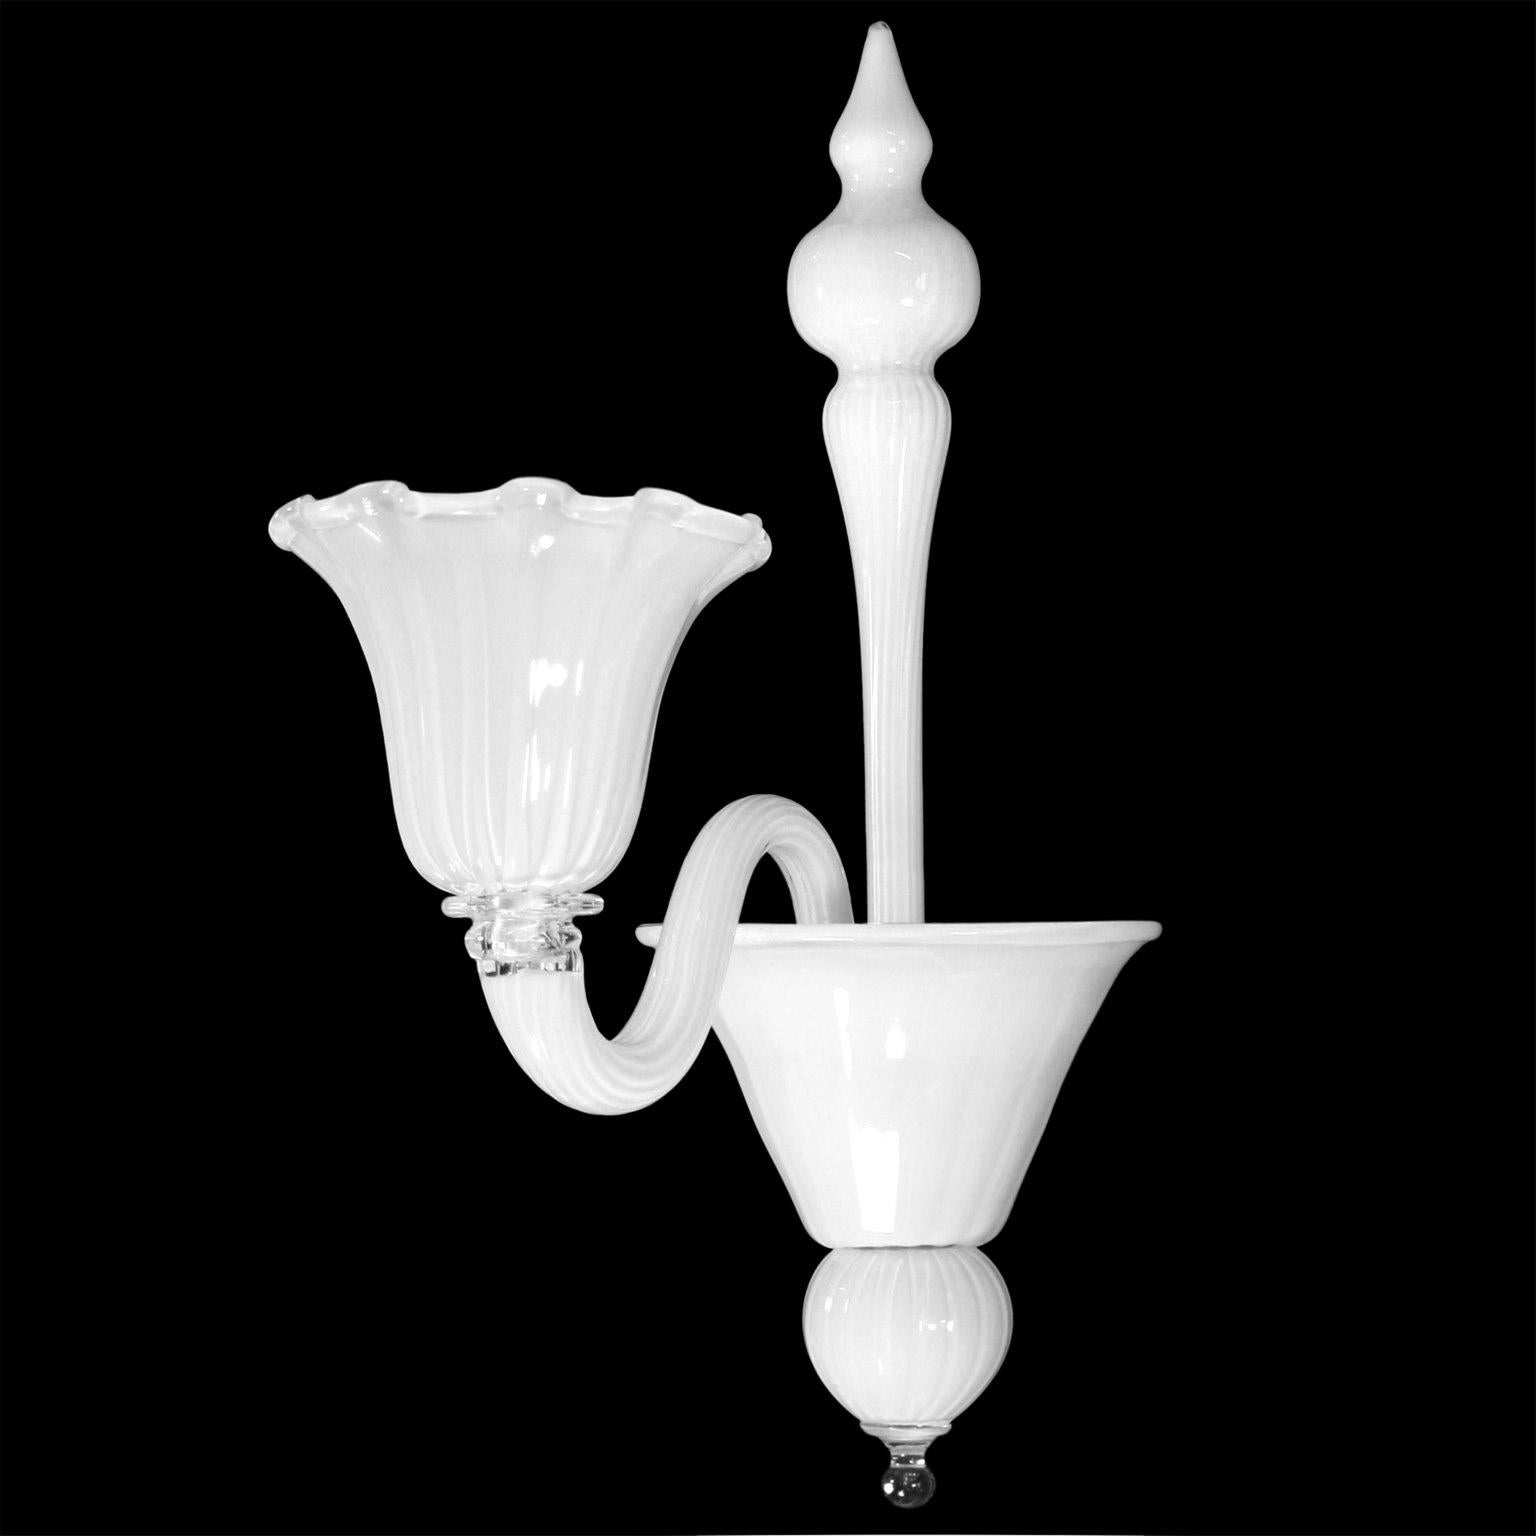 Applique Bellepoque 1 lumière, verre de Murano encastré blanc, par Multiforme.
Bellepoque 364 de la collection Timeless est une collection qui évoque l'atmosphère du début du 19ème siècle. Les tasses rappellent des éléments floraux, donnant ainsi à